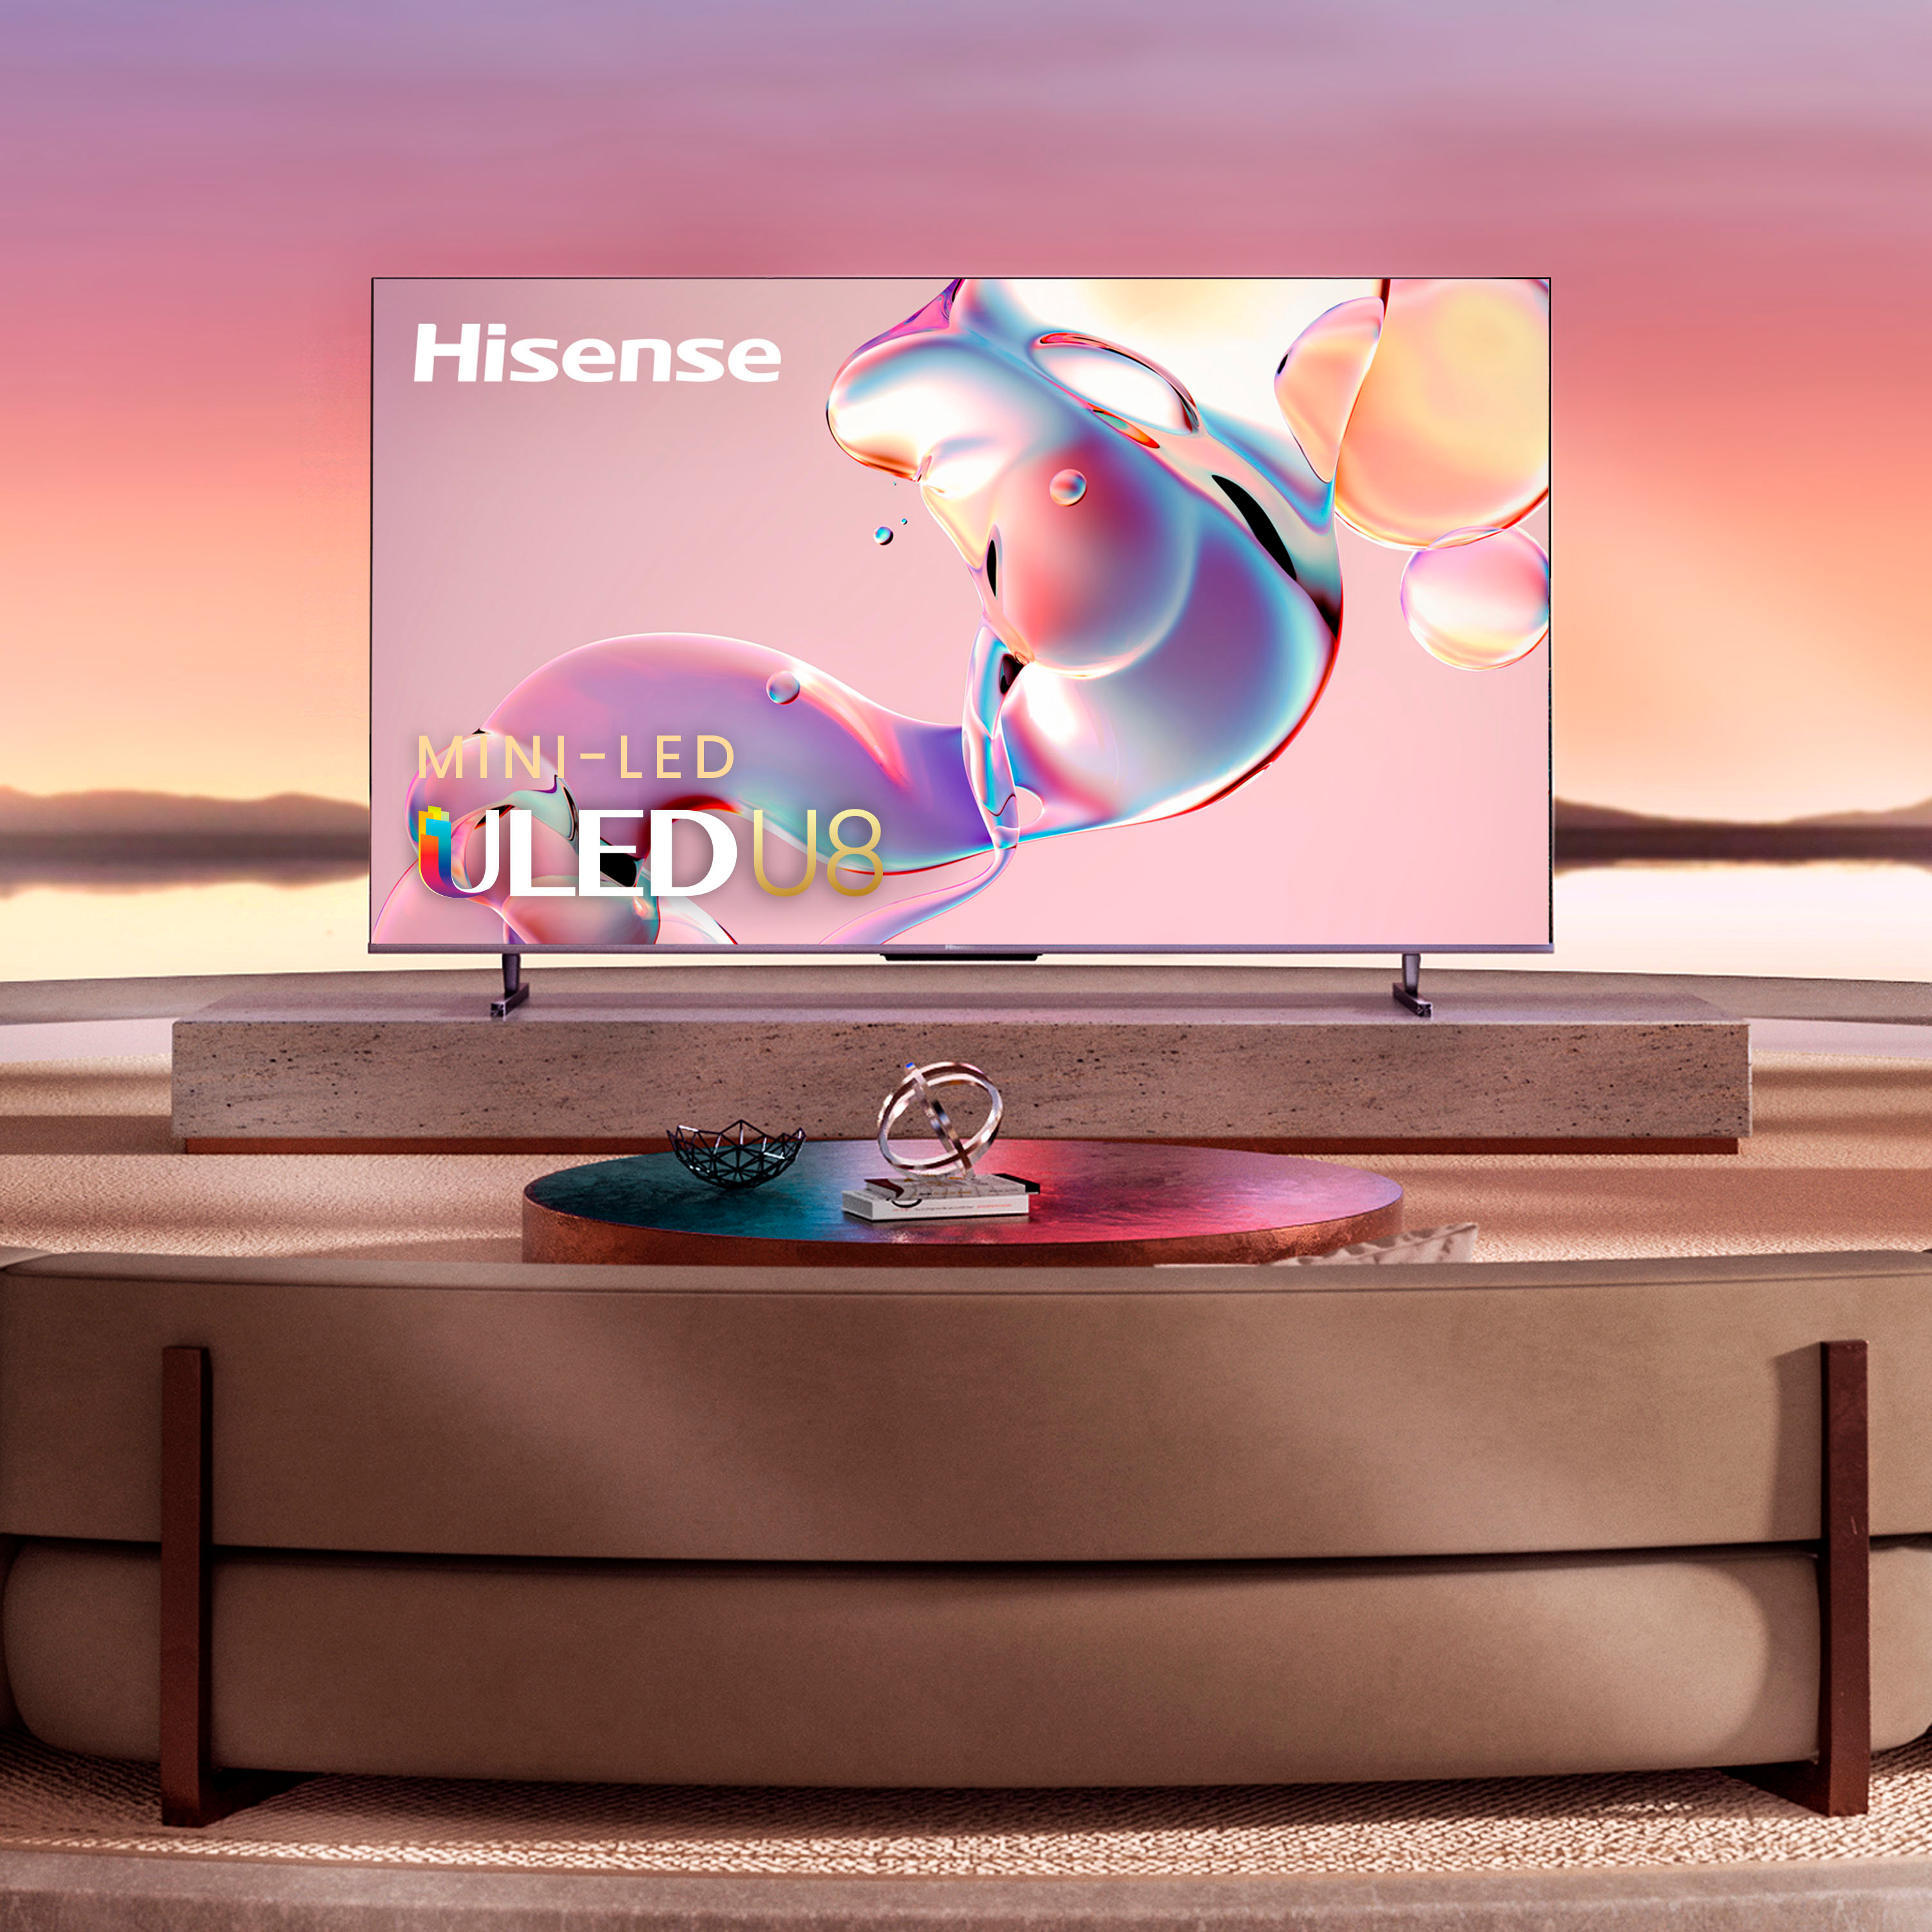 TV HISENSE 55U8KQ (Mini LED - ULED 4K - 55'' - 139 cm - Smart TV)